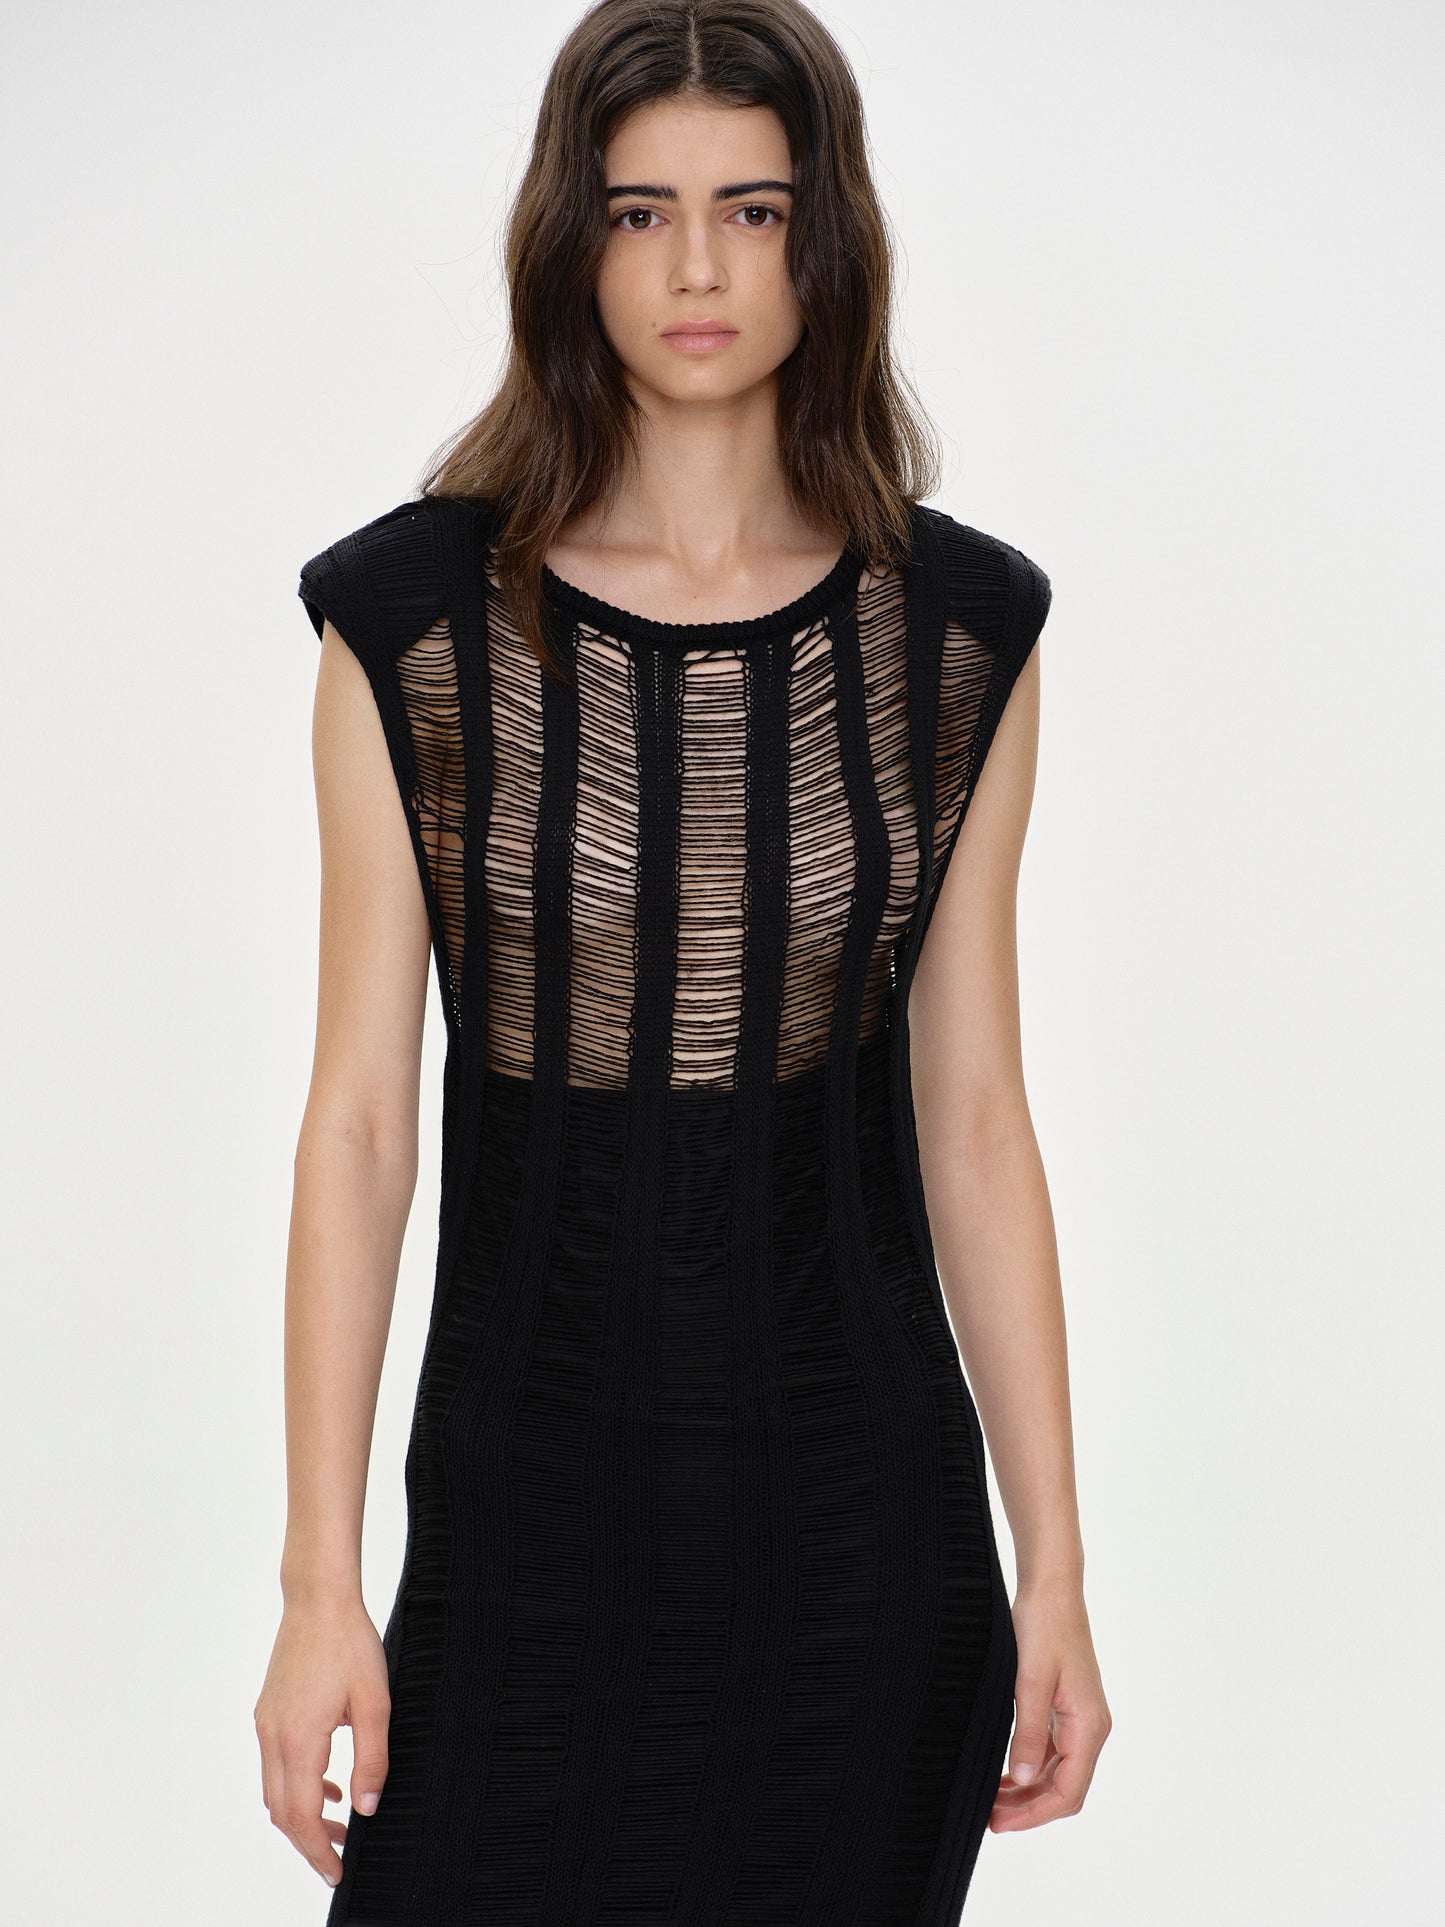 Pad Shoulder Netted Dress, Black